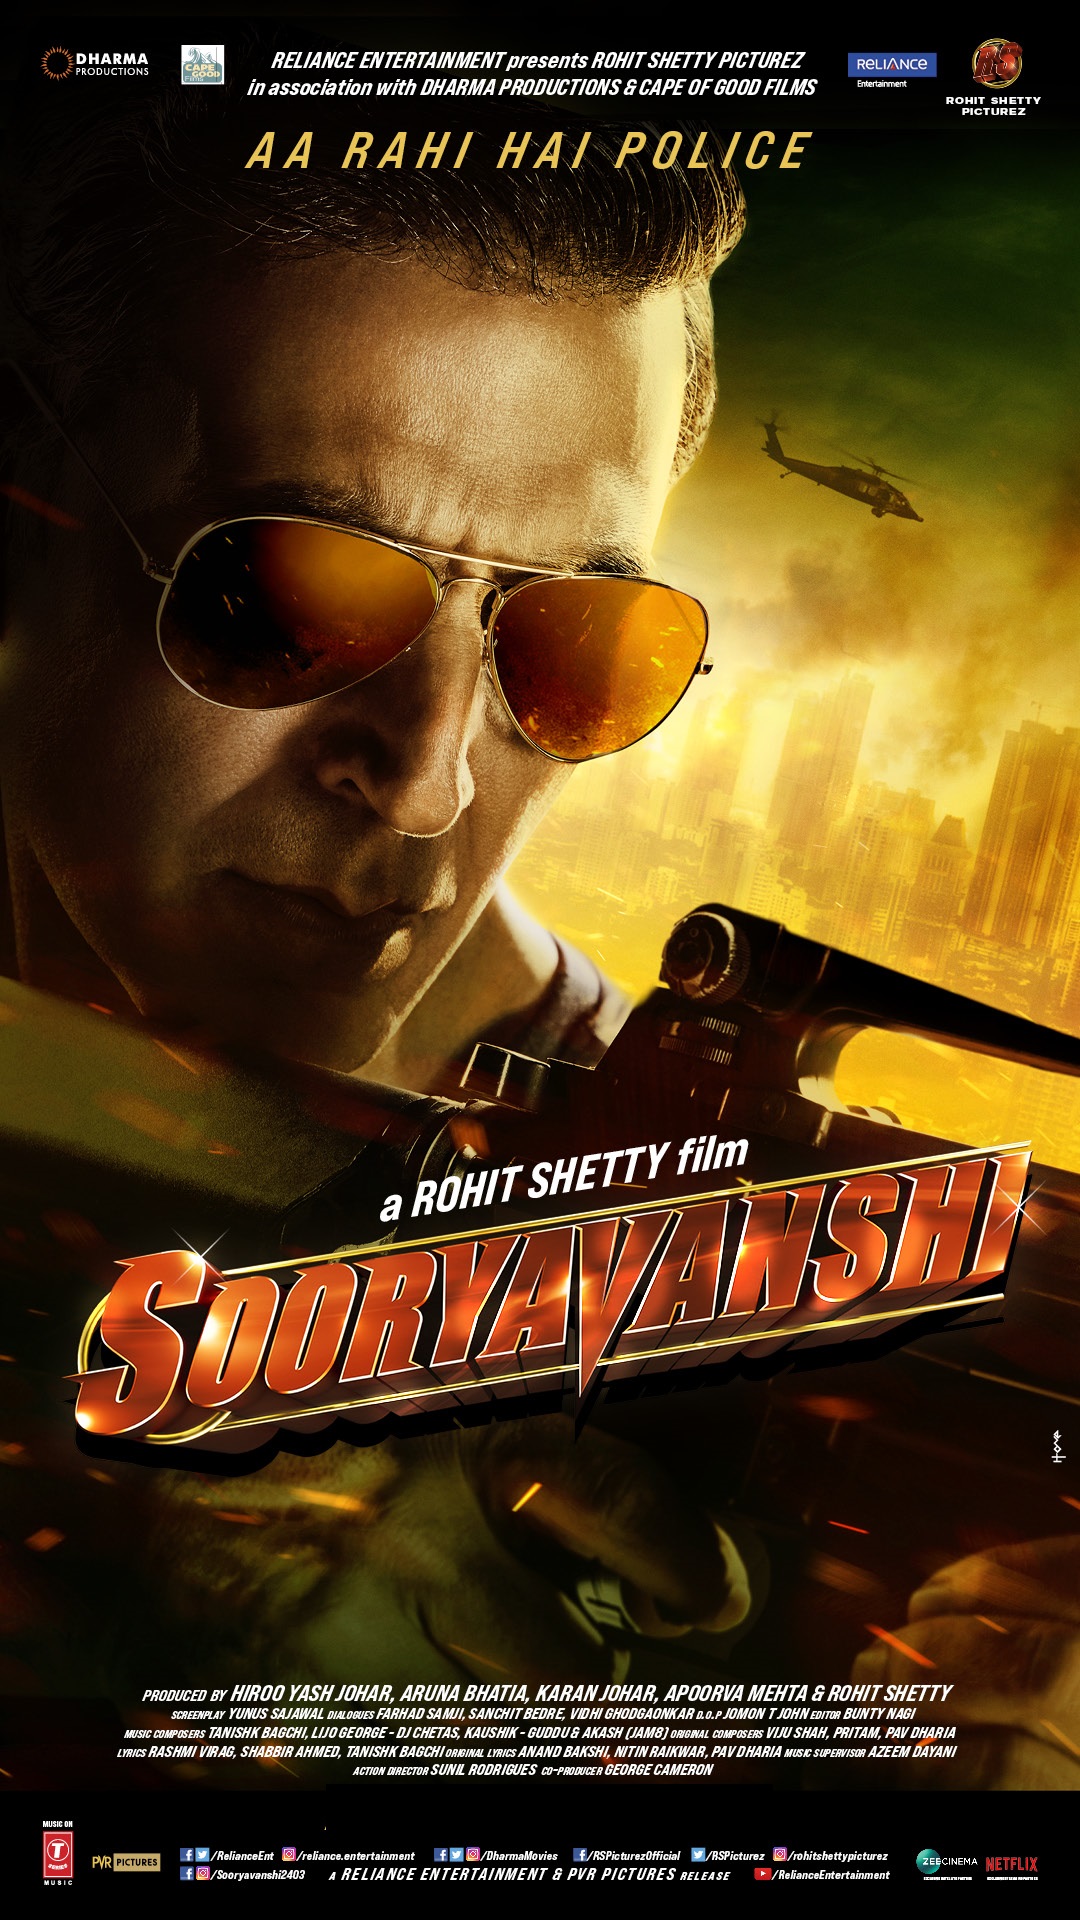 Download Bollywood movie Sooryavanshi